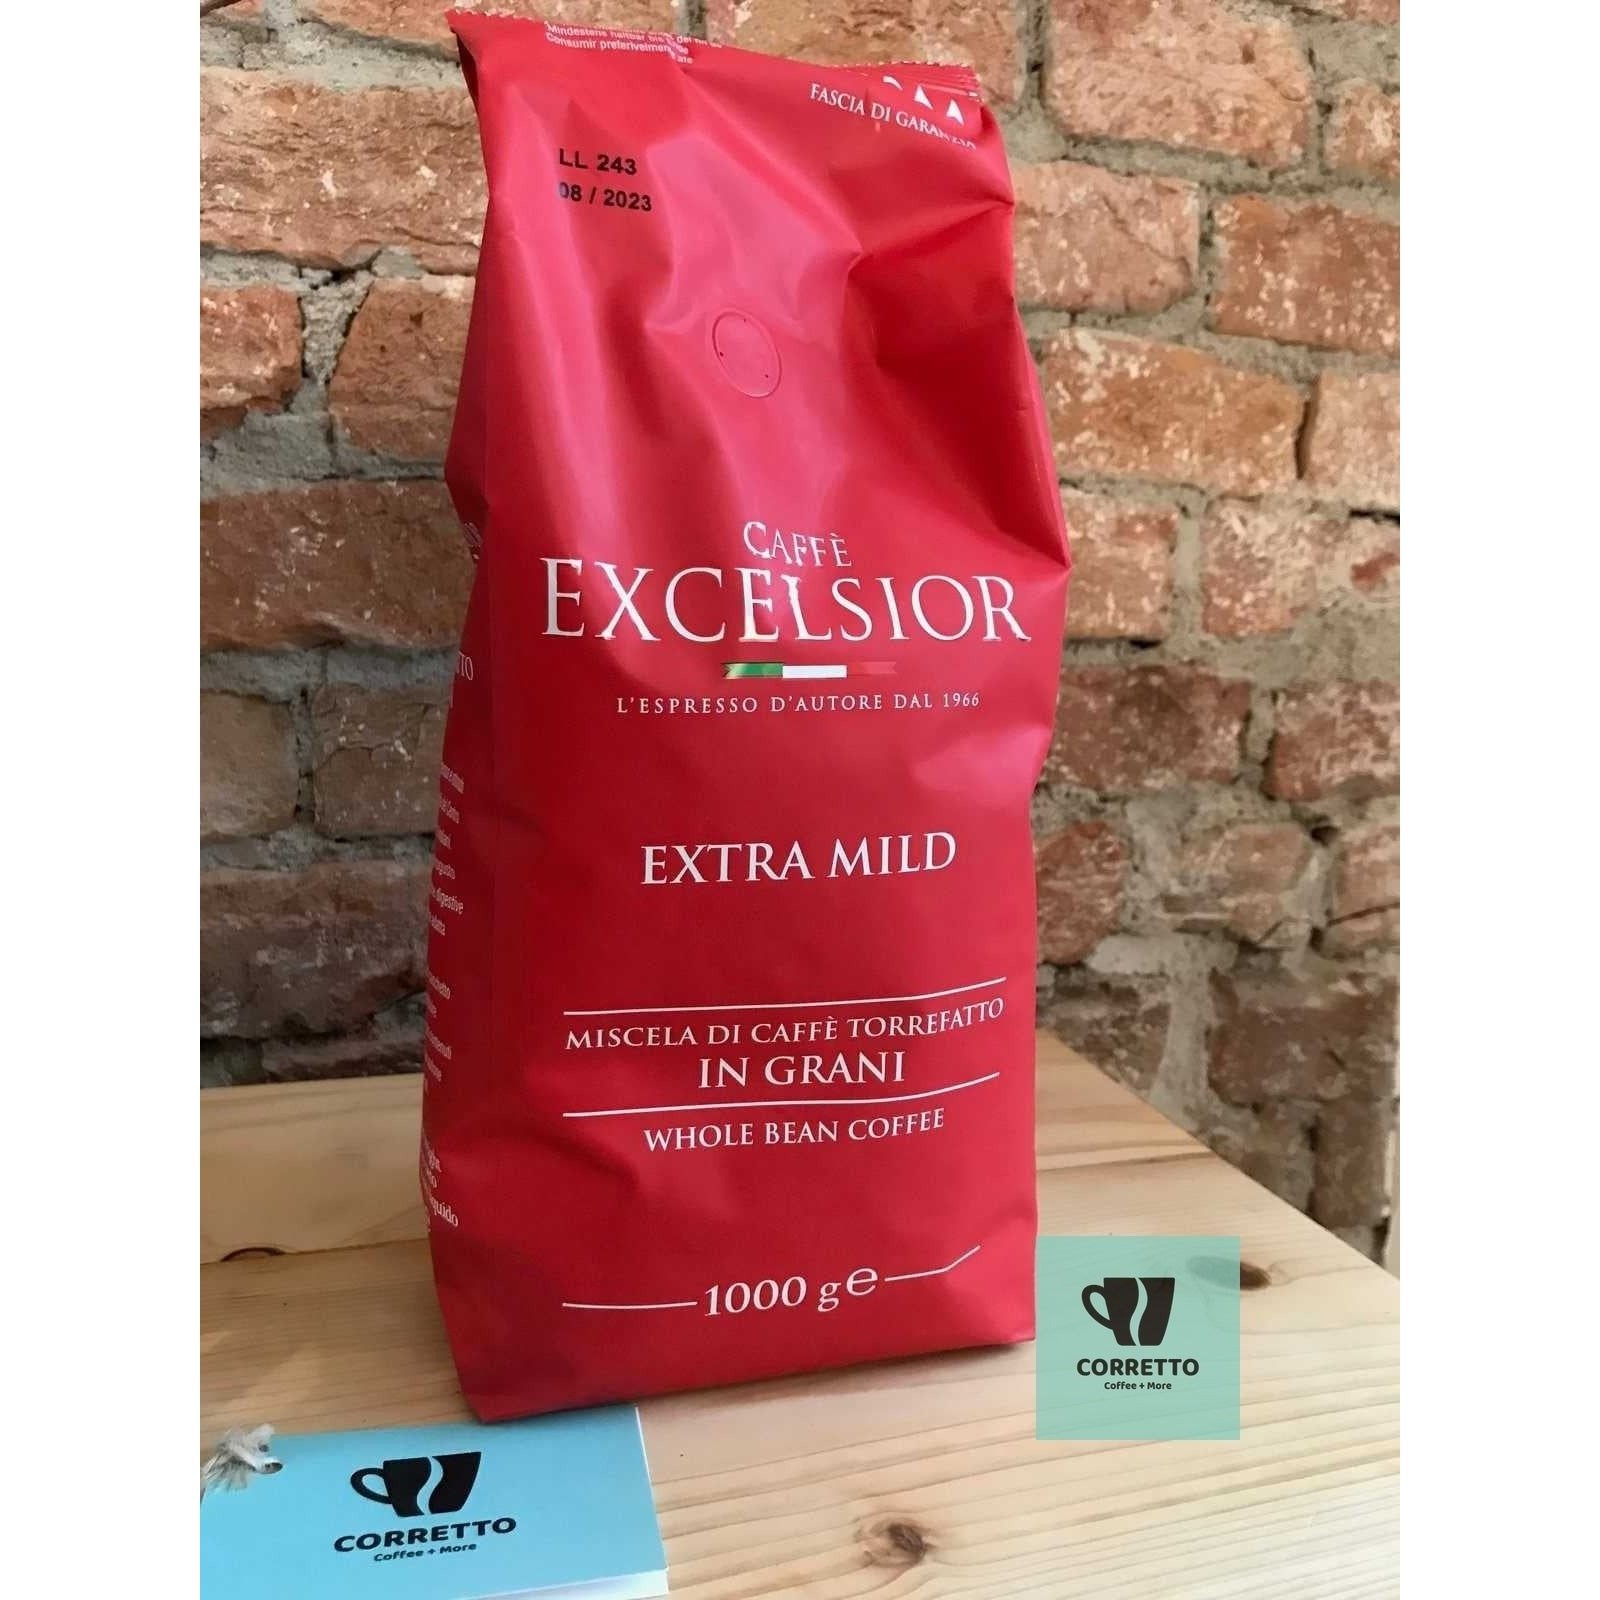 EXCELSIOR Caffe Extra Mild ★☆☆☆☆